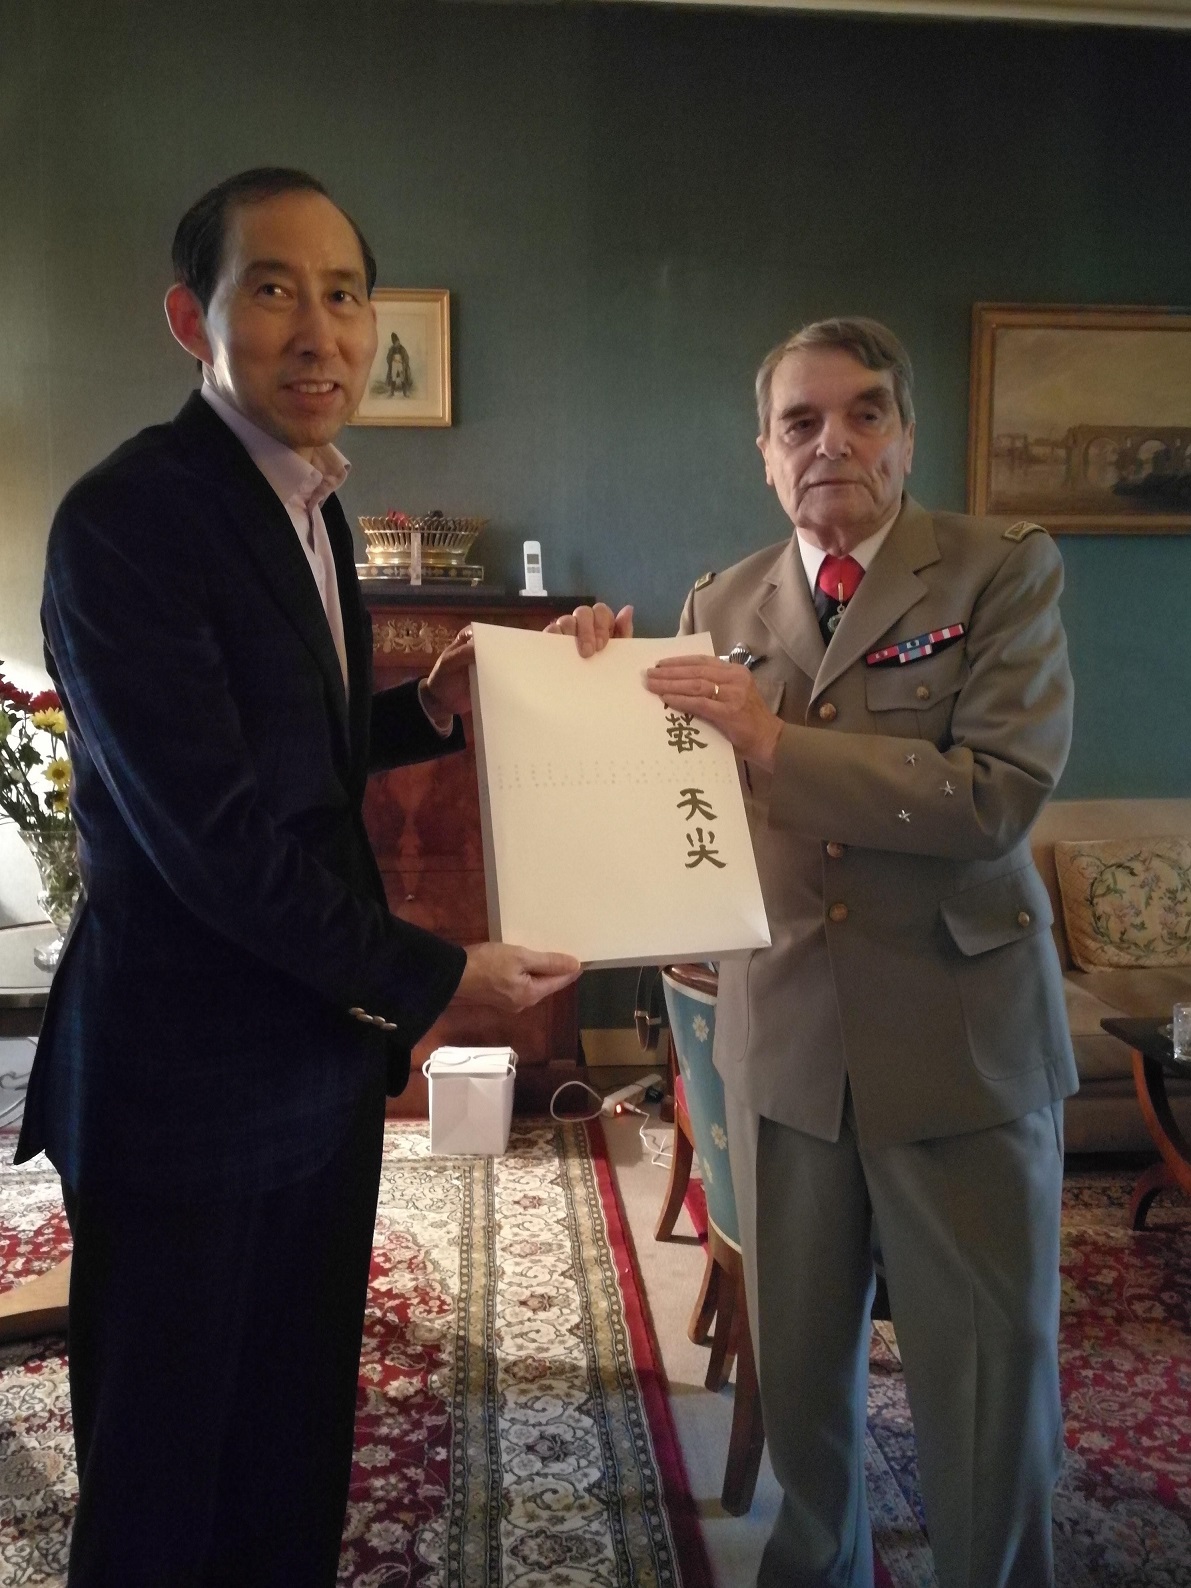 2017龙宇翔向法国上将兼总统顾问亨利•帕里斯赠送香木海黑茶